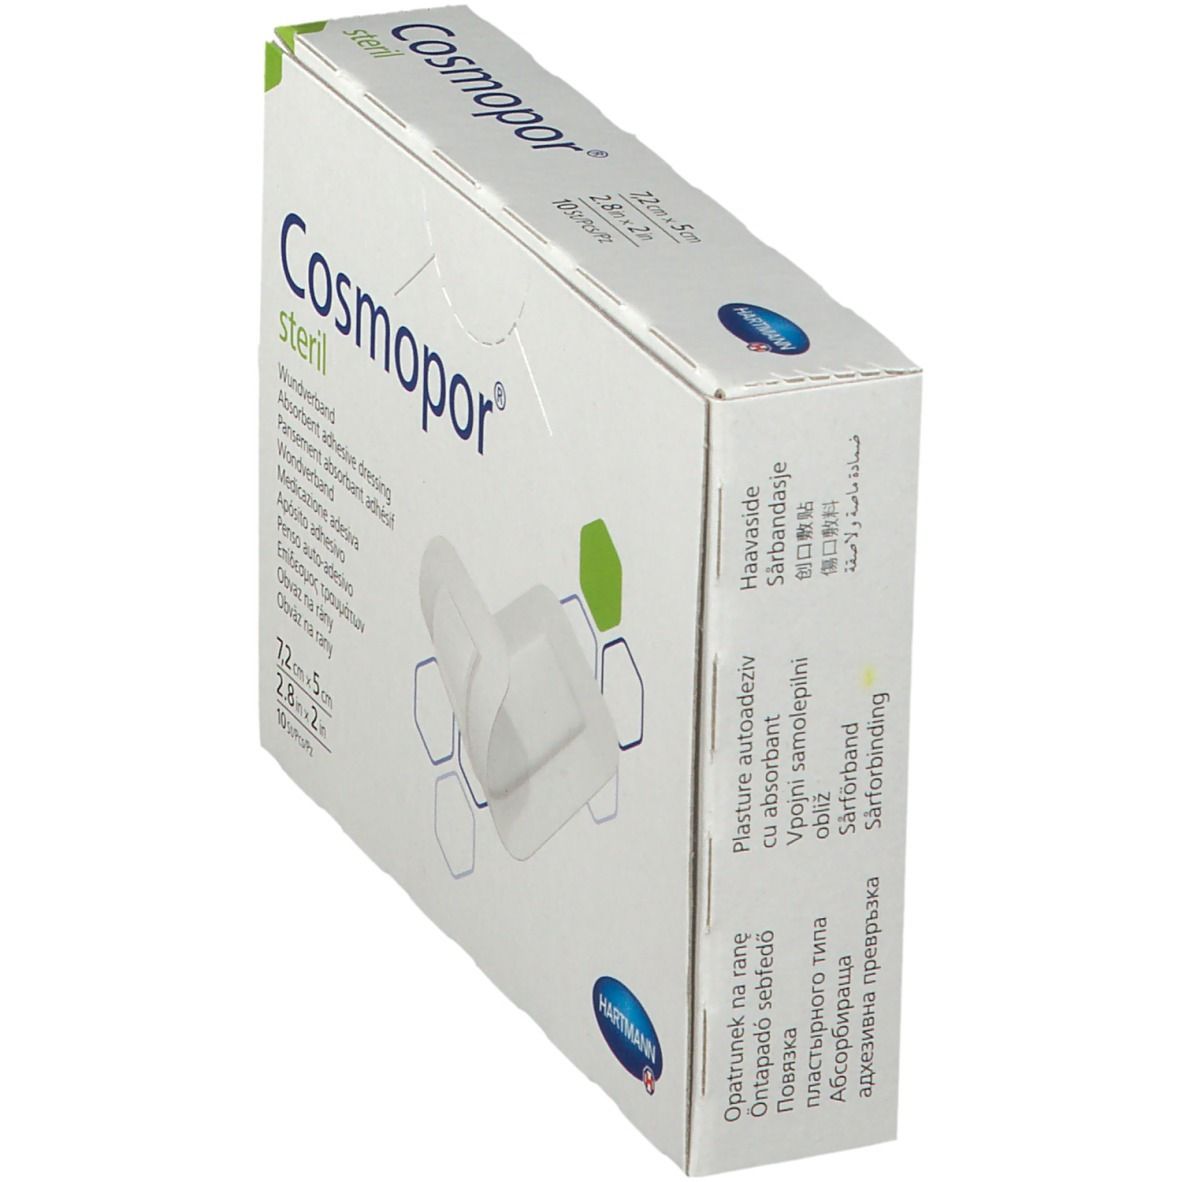 Cosmopor® steril 7,2 x 5 cm